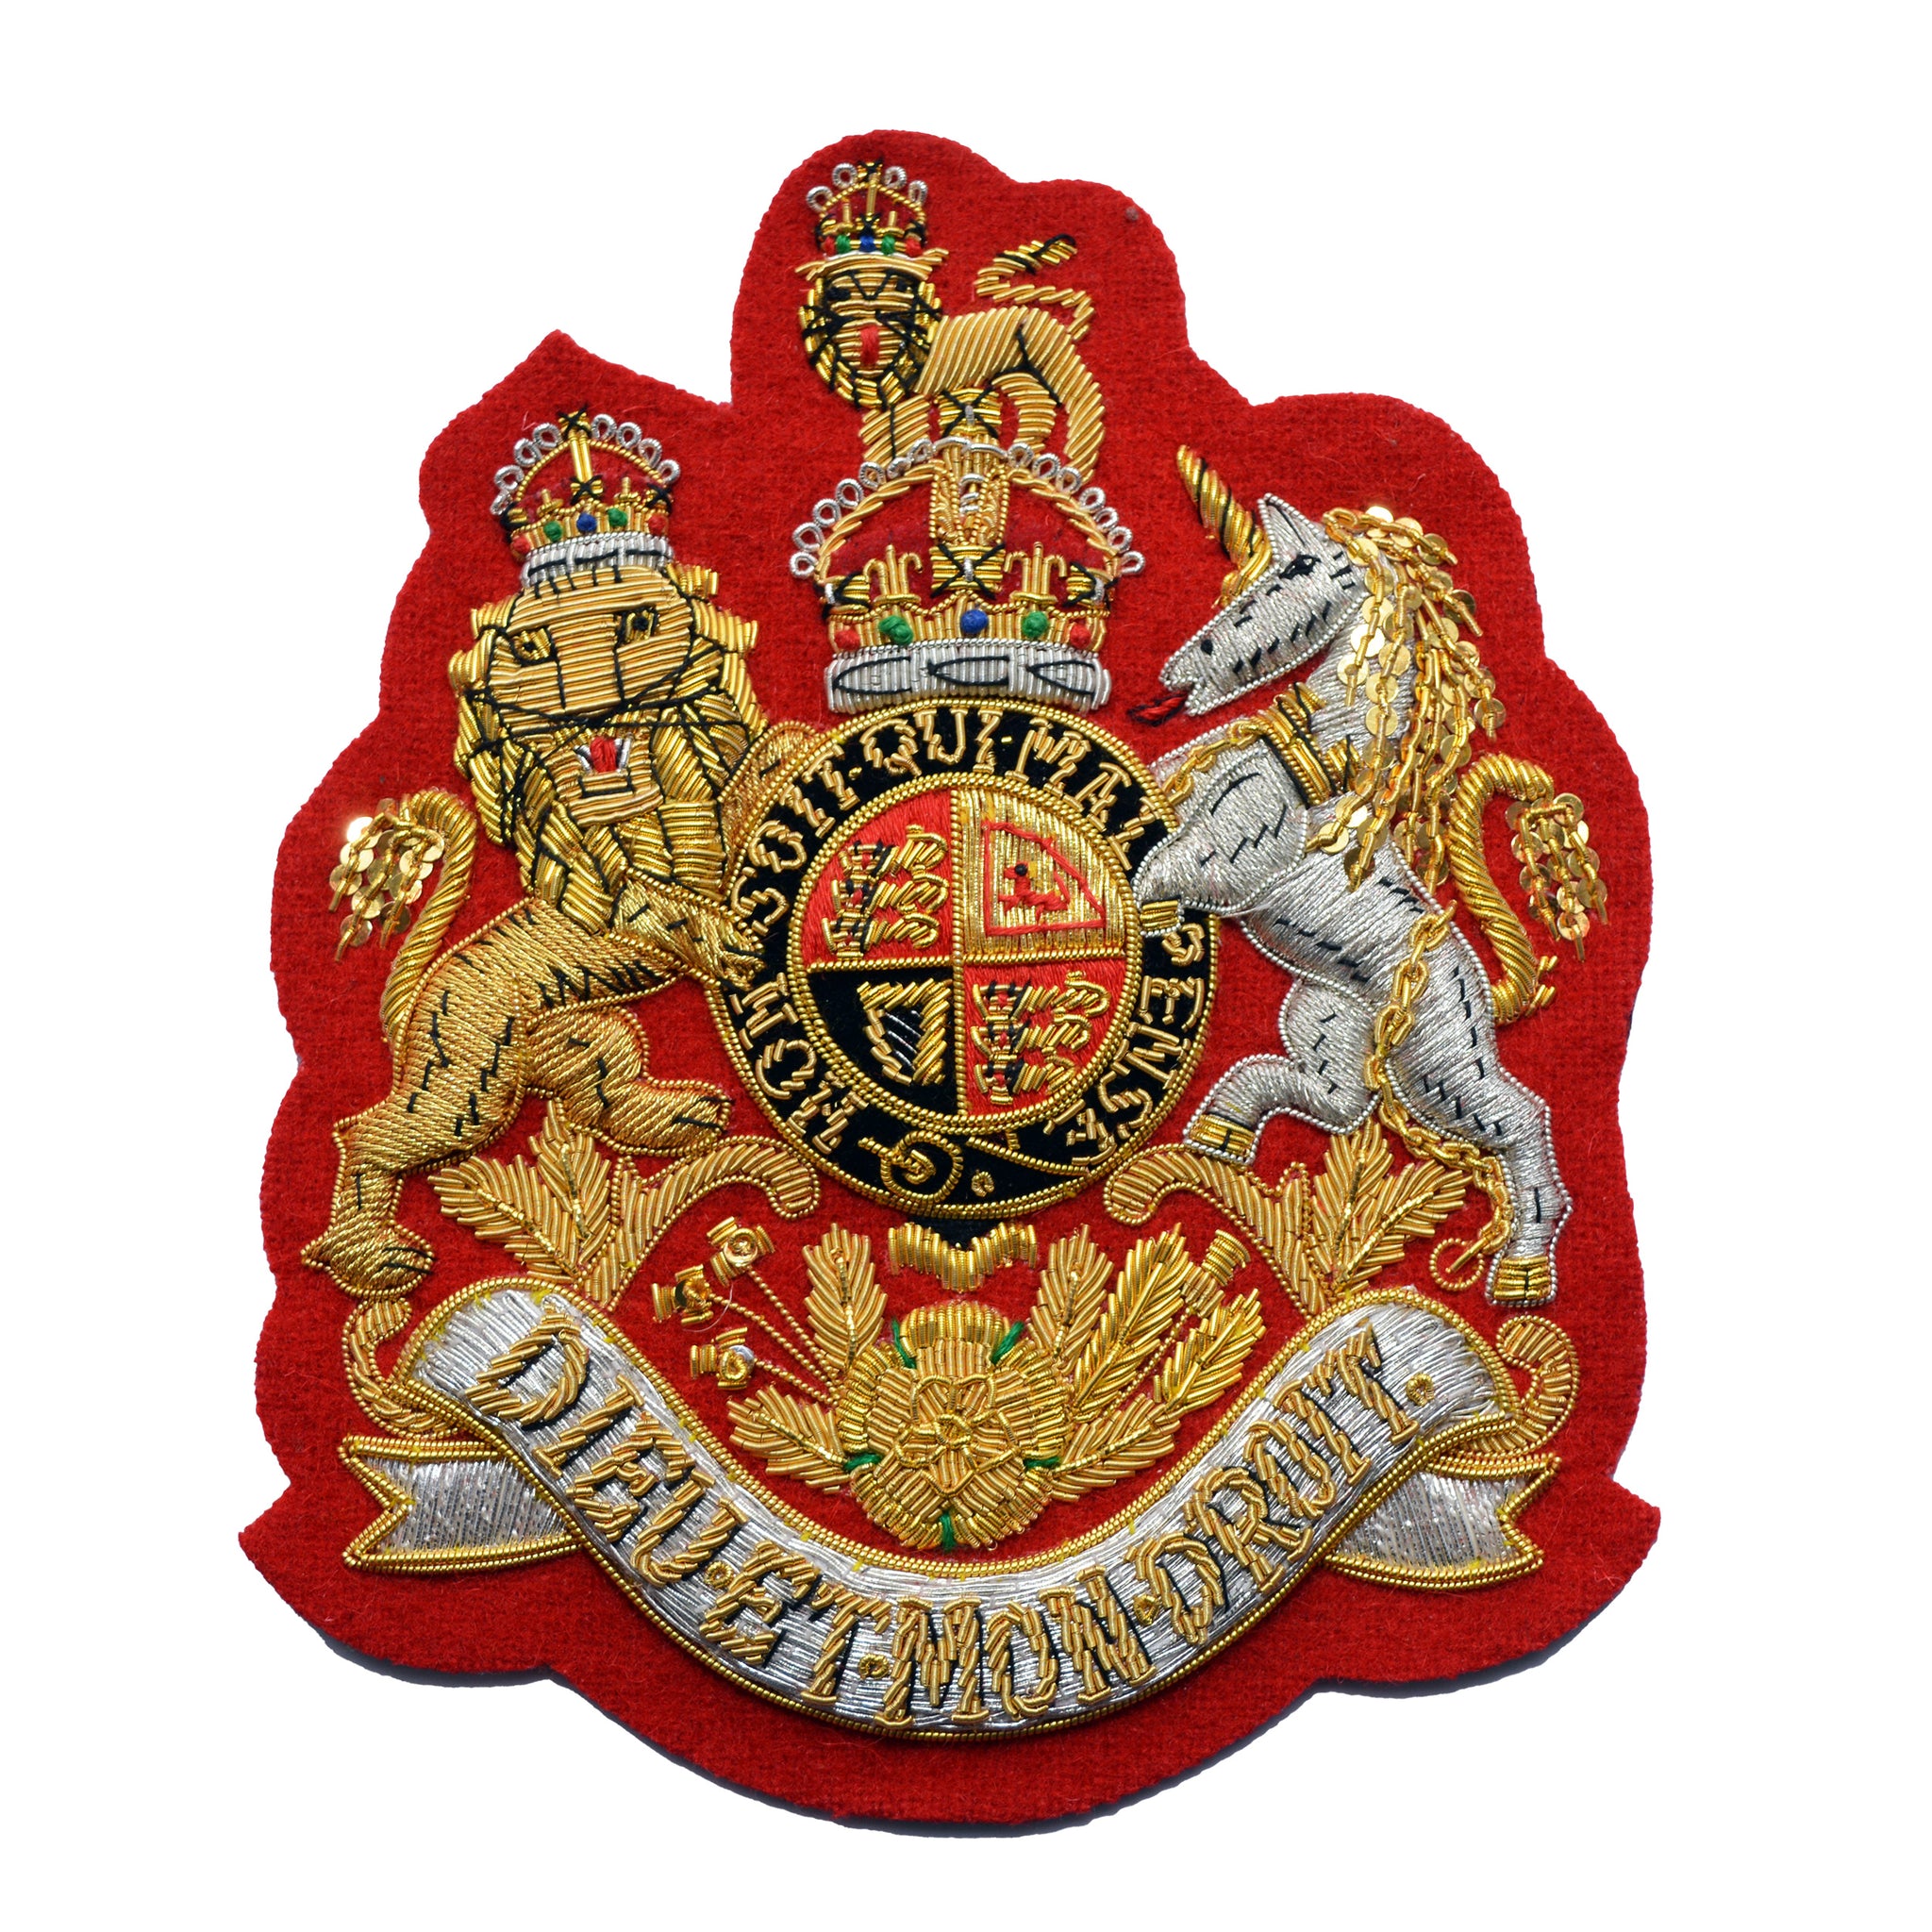 (Kings Crown) Superintending Clerk and Regimental Sergeant Major (RSM) Foot Guards Large Royal Arms British Army Rank Badge